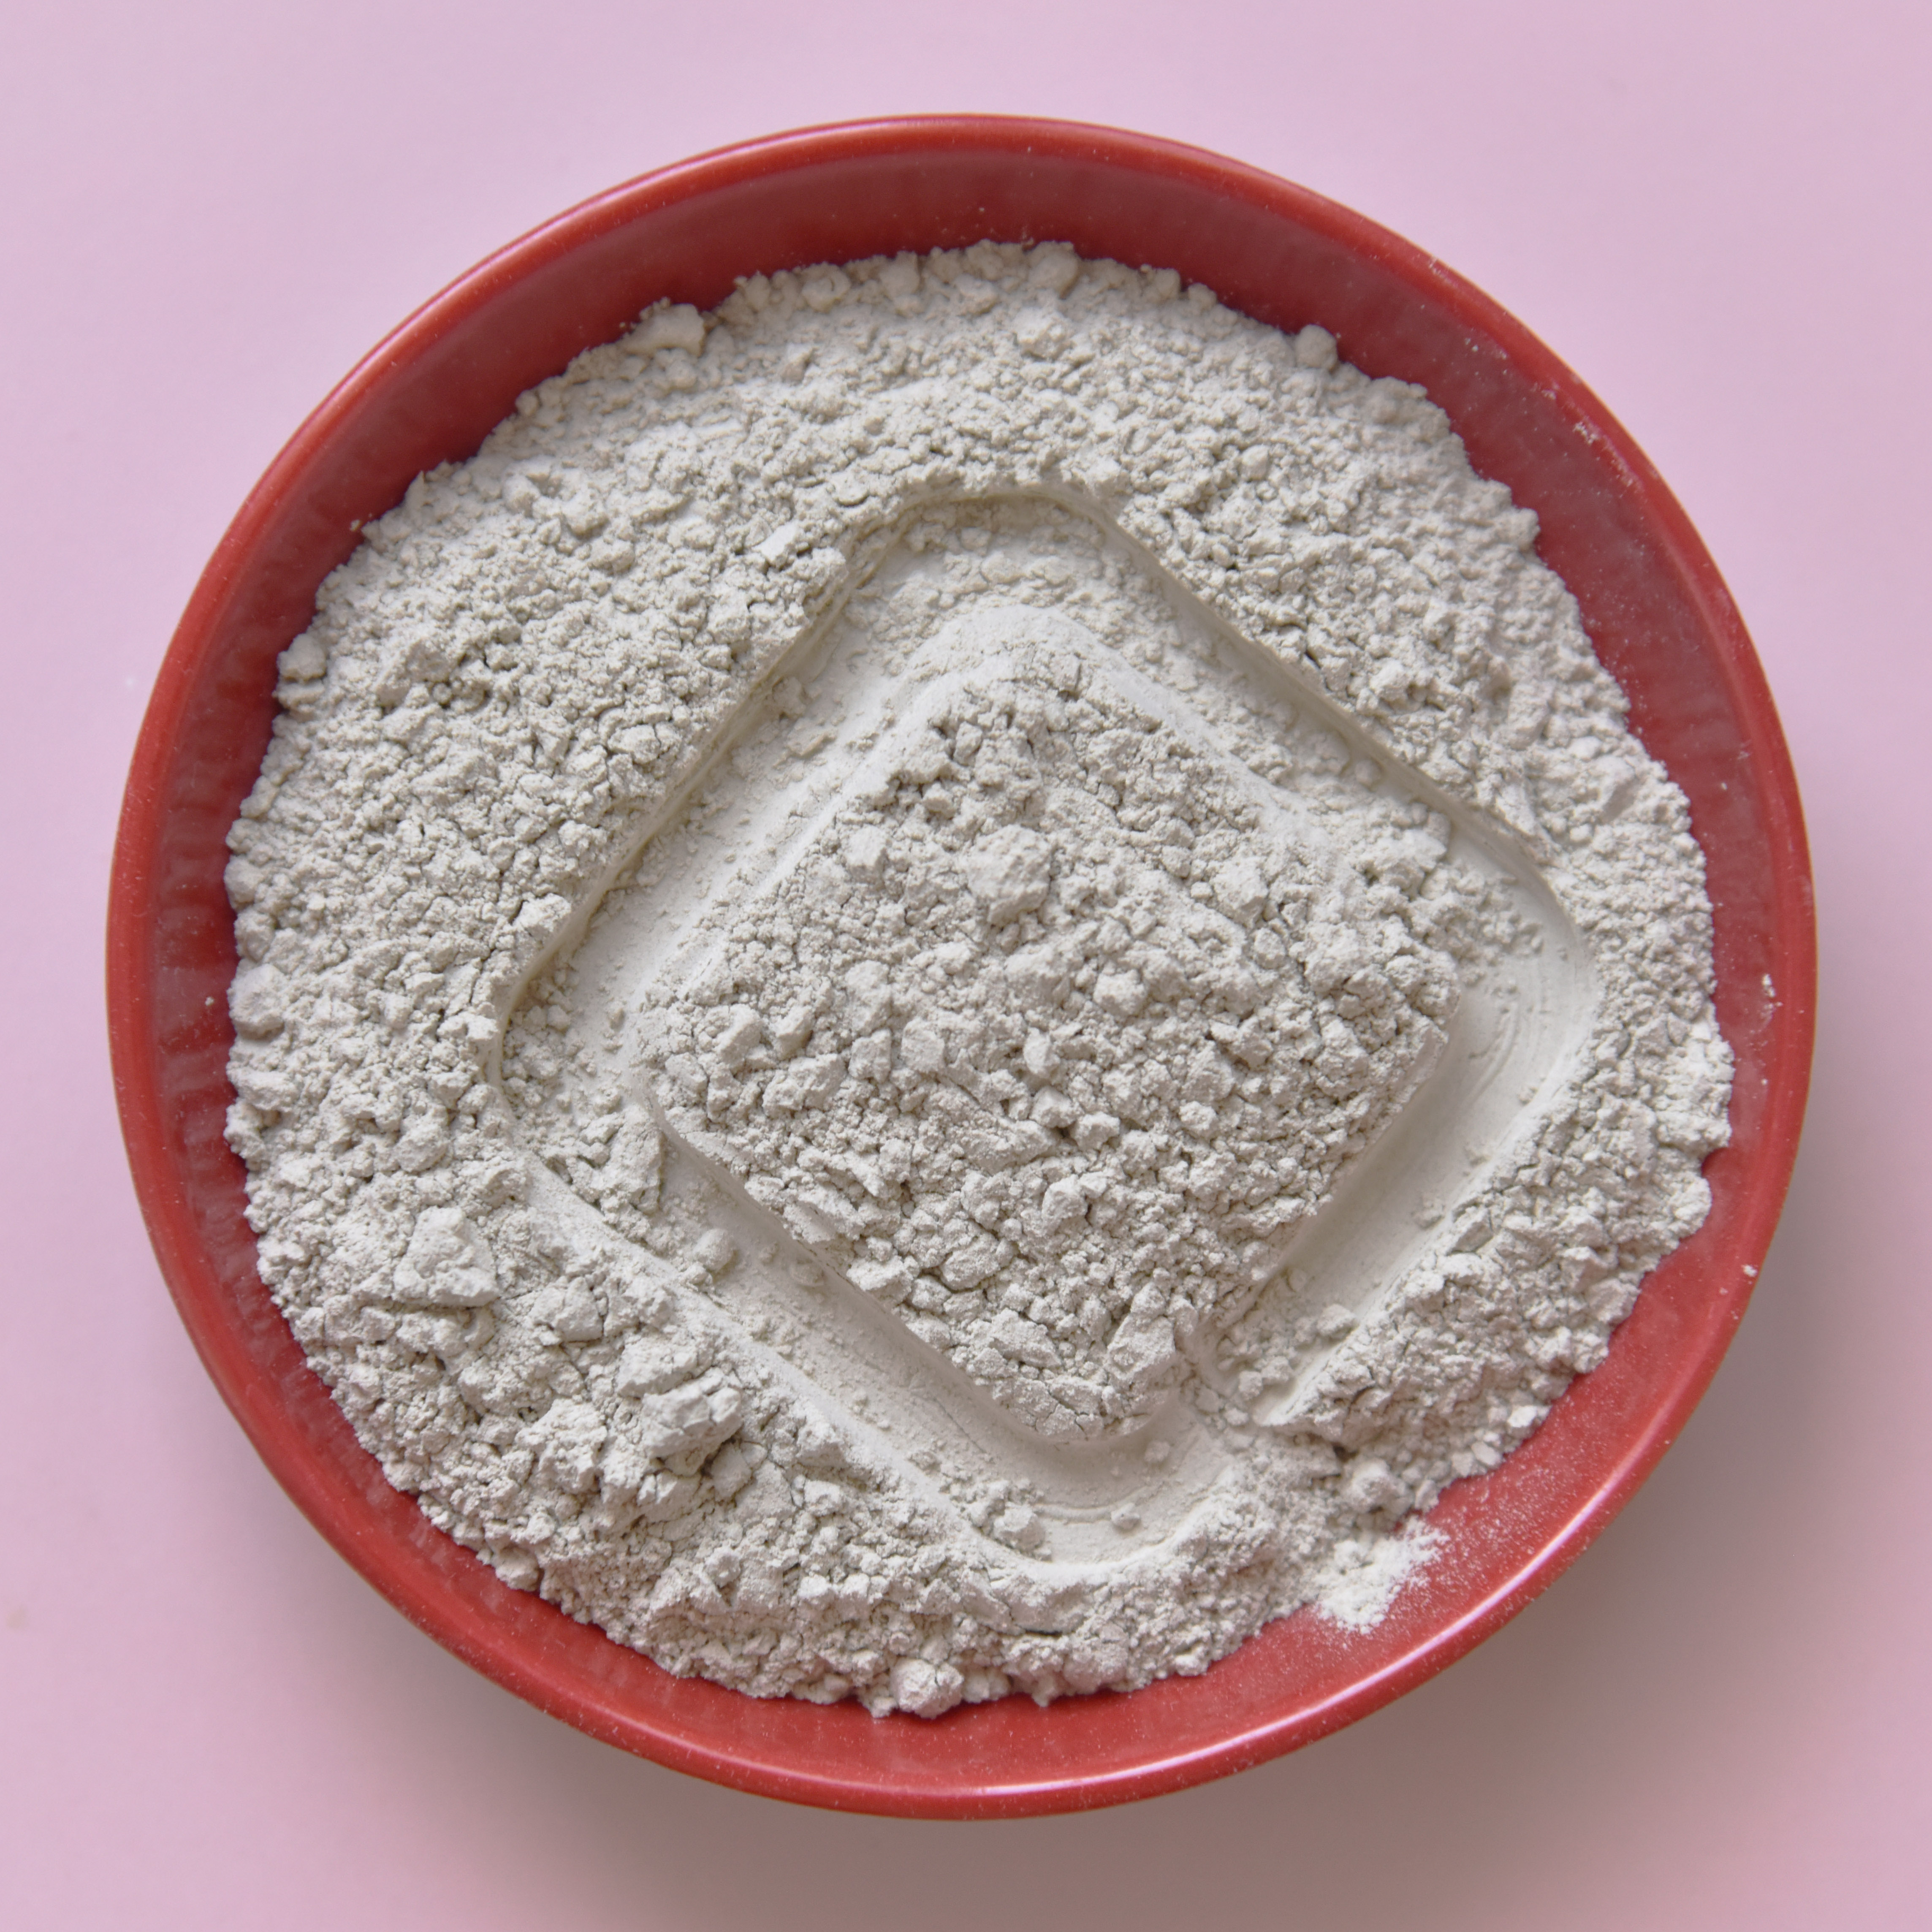 超细麦饭石粉 供应饲料添加用麦饭石粉 肥料添加剂麦饭石图片